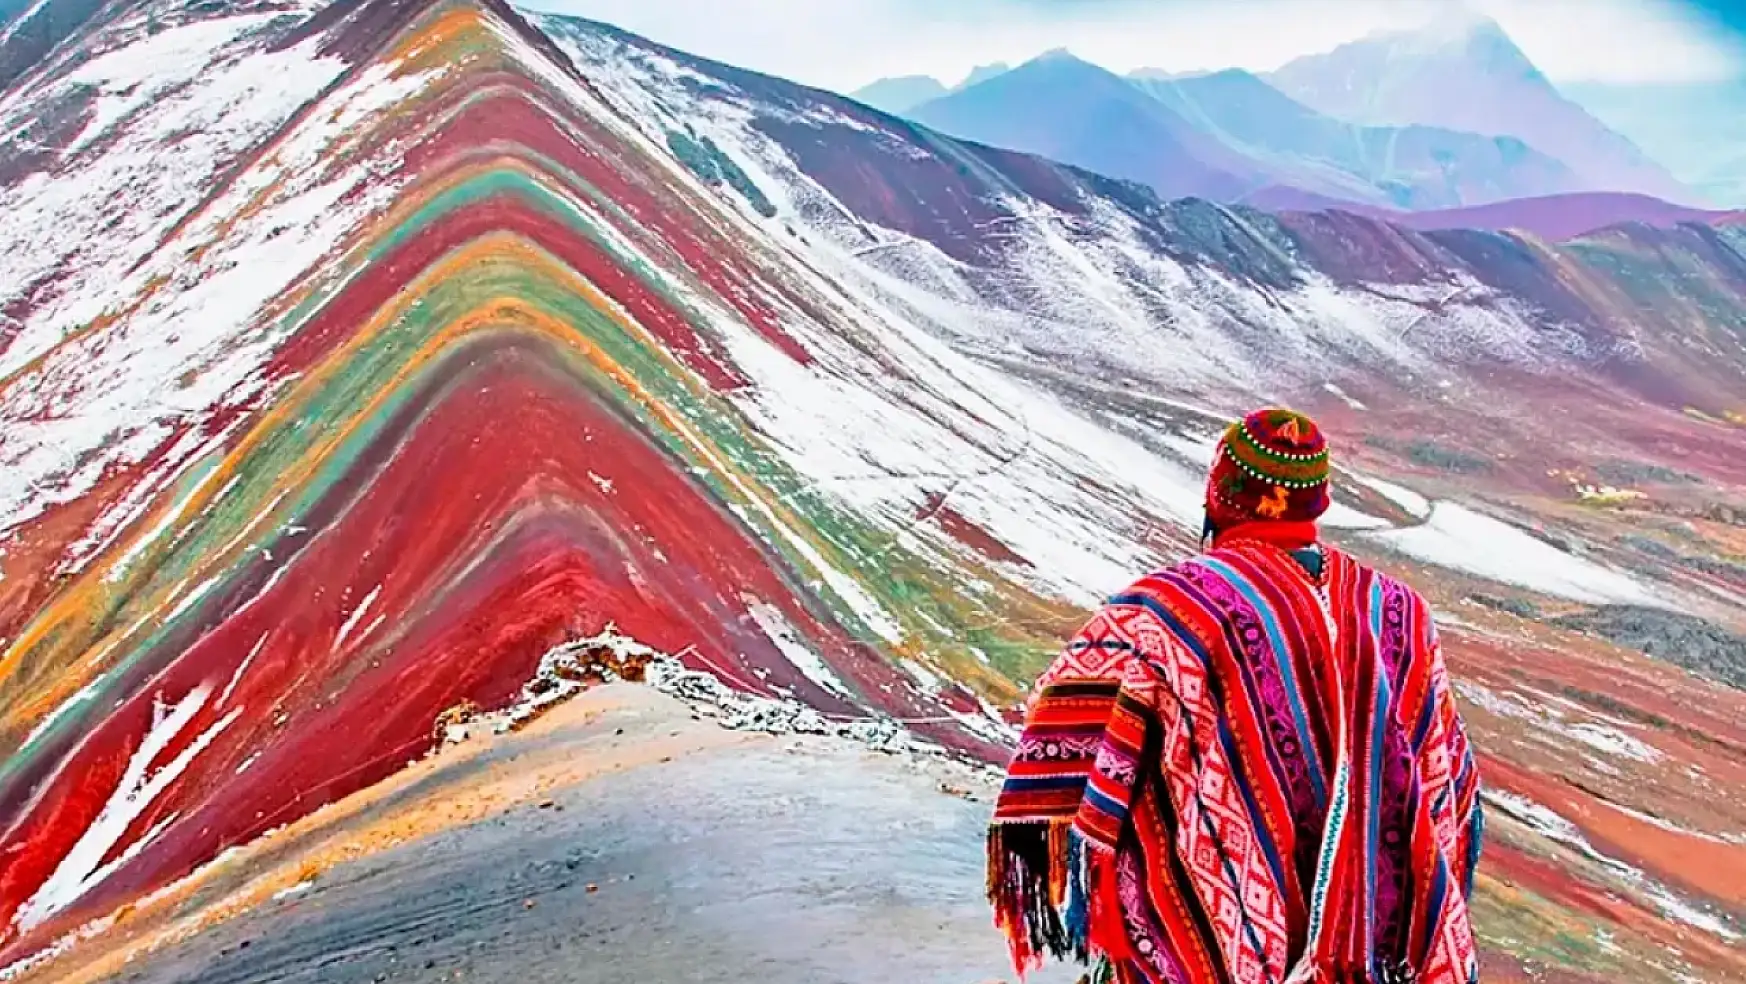 Vinicunca: Peru'nun gökkuşağı renklerine sahip dağı